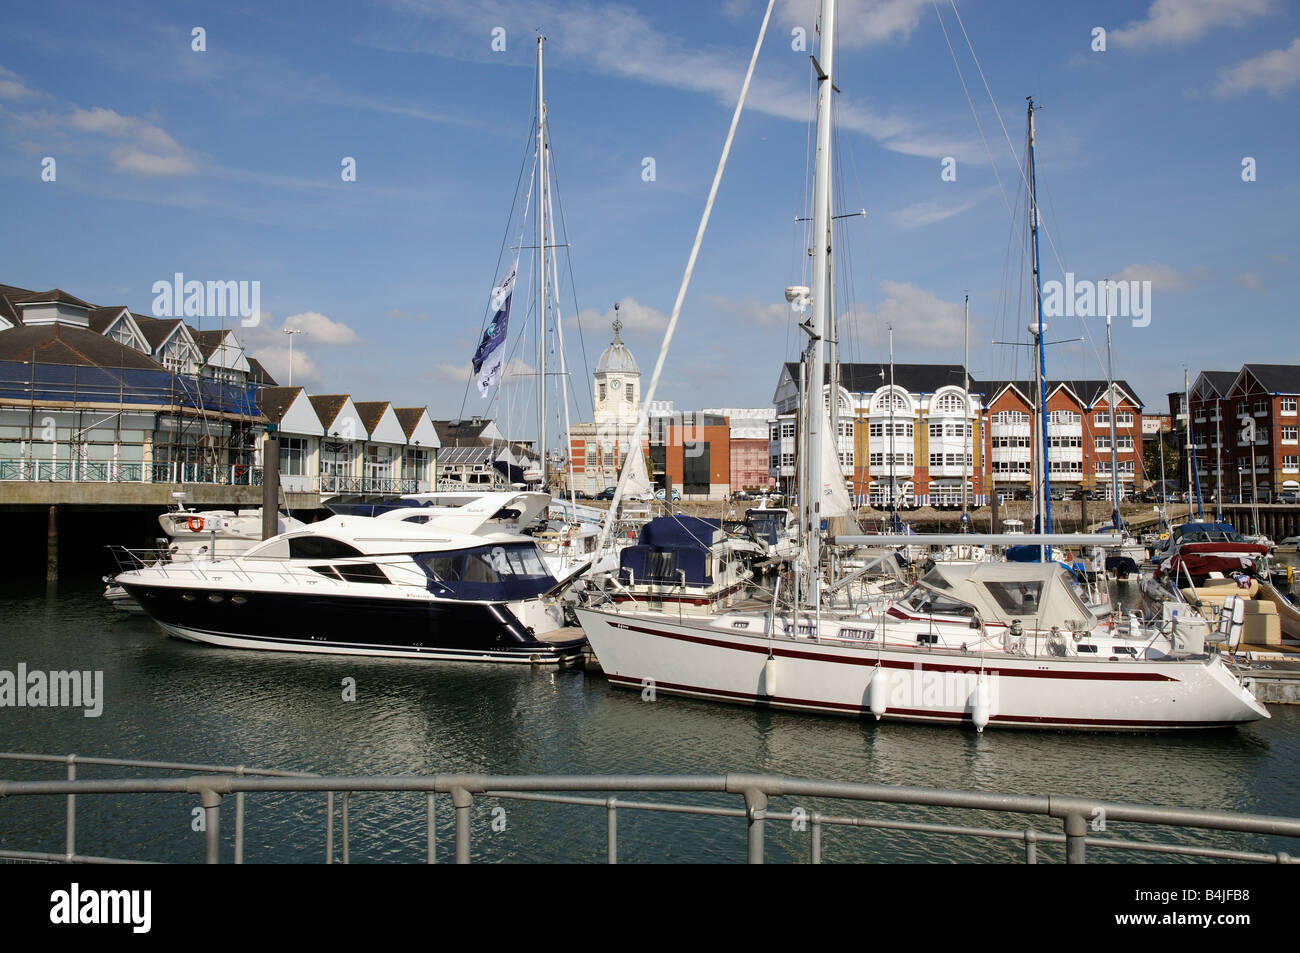 Stadt Kai Southampton England UK Waterfront Entwicklung des Gehäuses Bootfahren marina Stockfoto